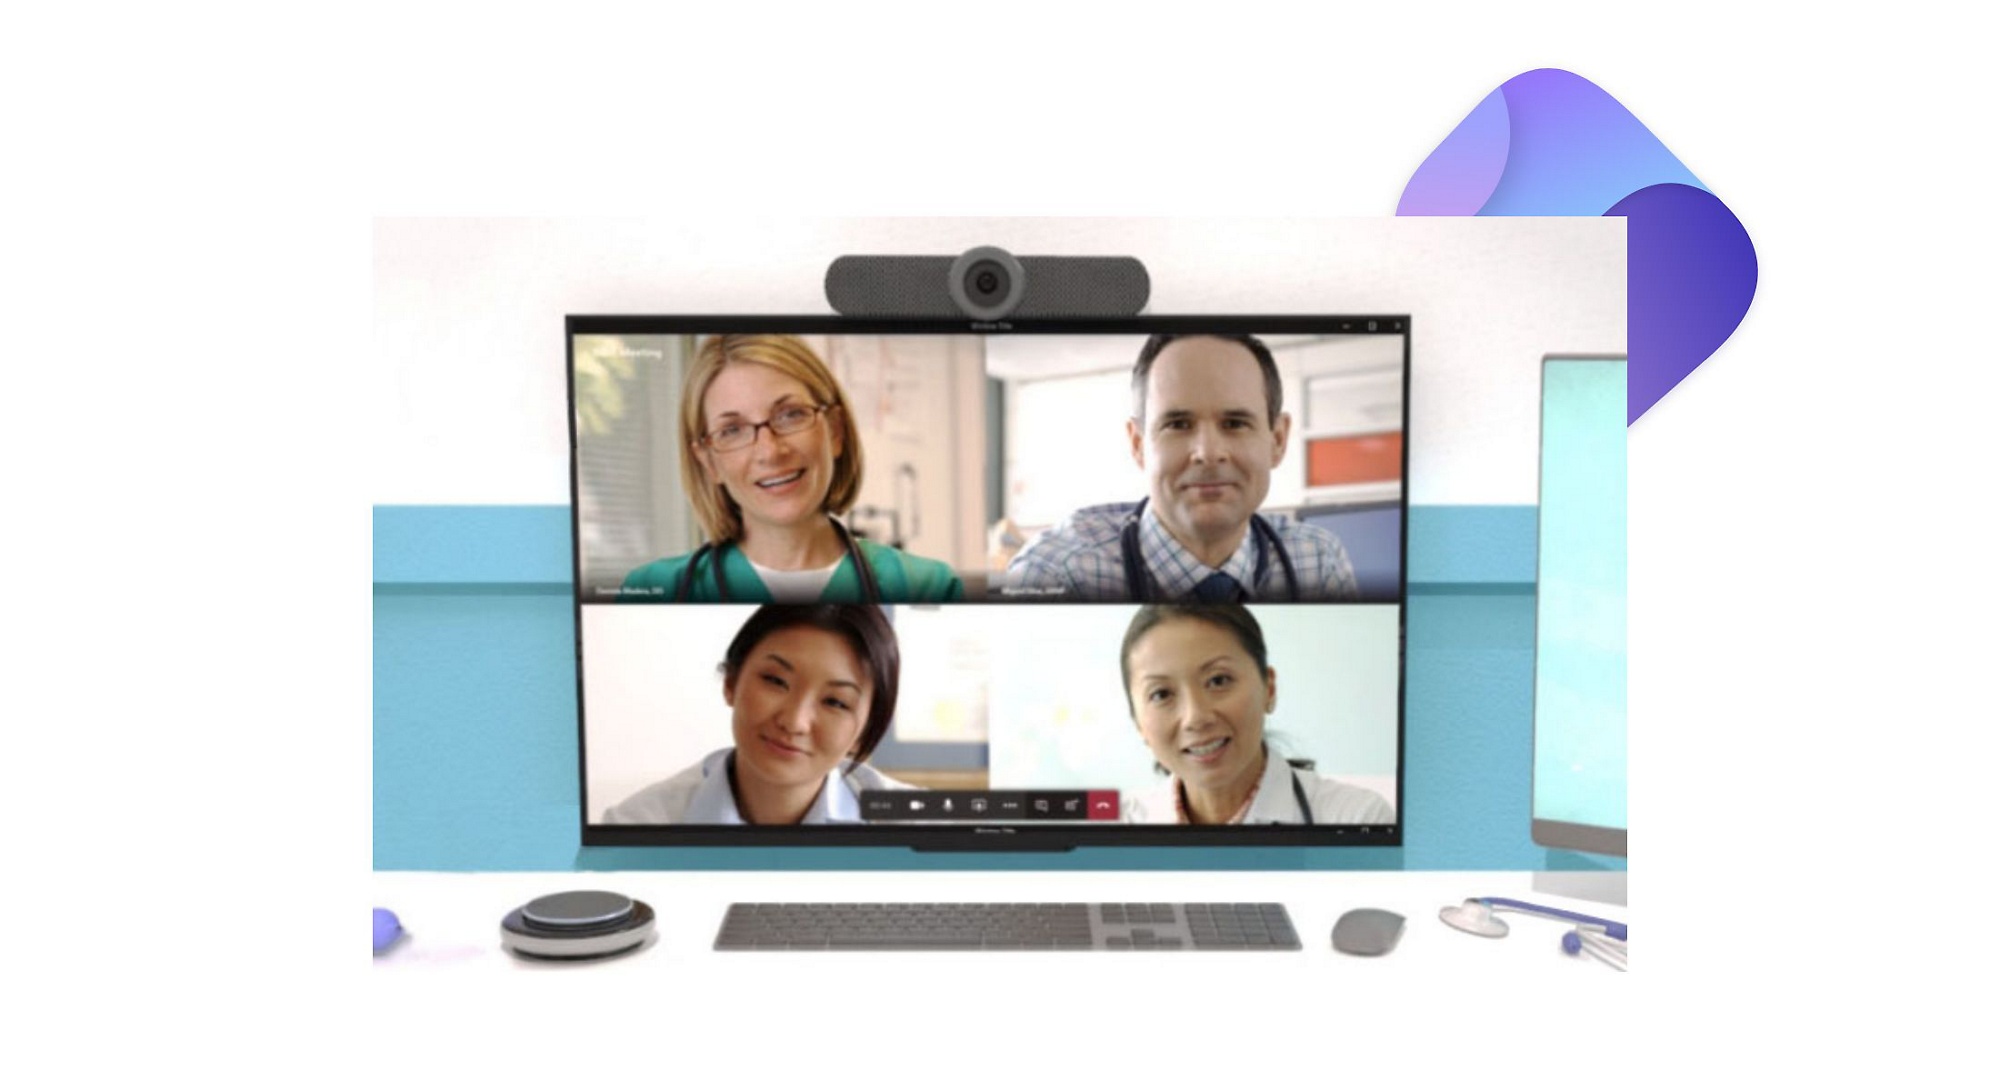 Egy folyamatban lévő Teams-videóhívás egy monitorral, kamerával és intelligens hangszóróval felszerelt íróasztalnál.